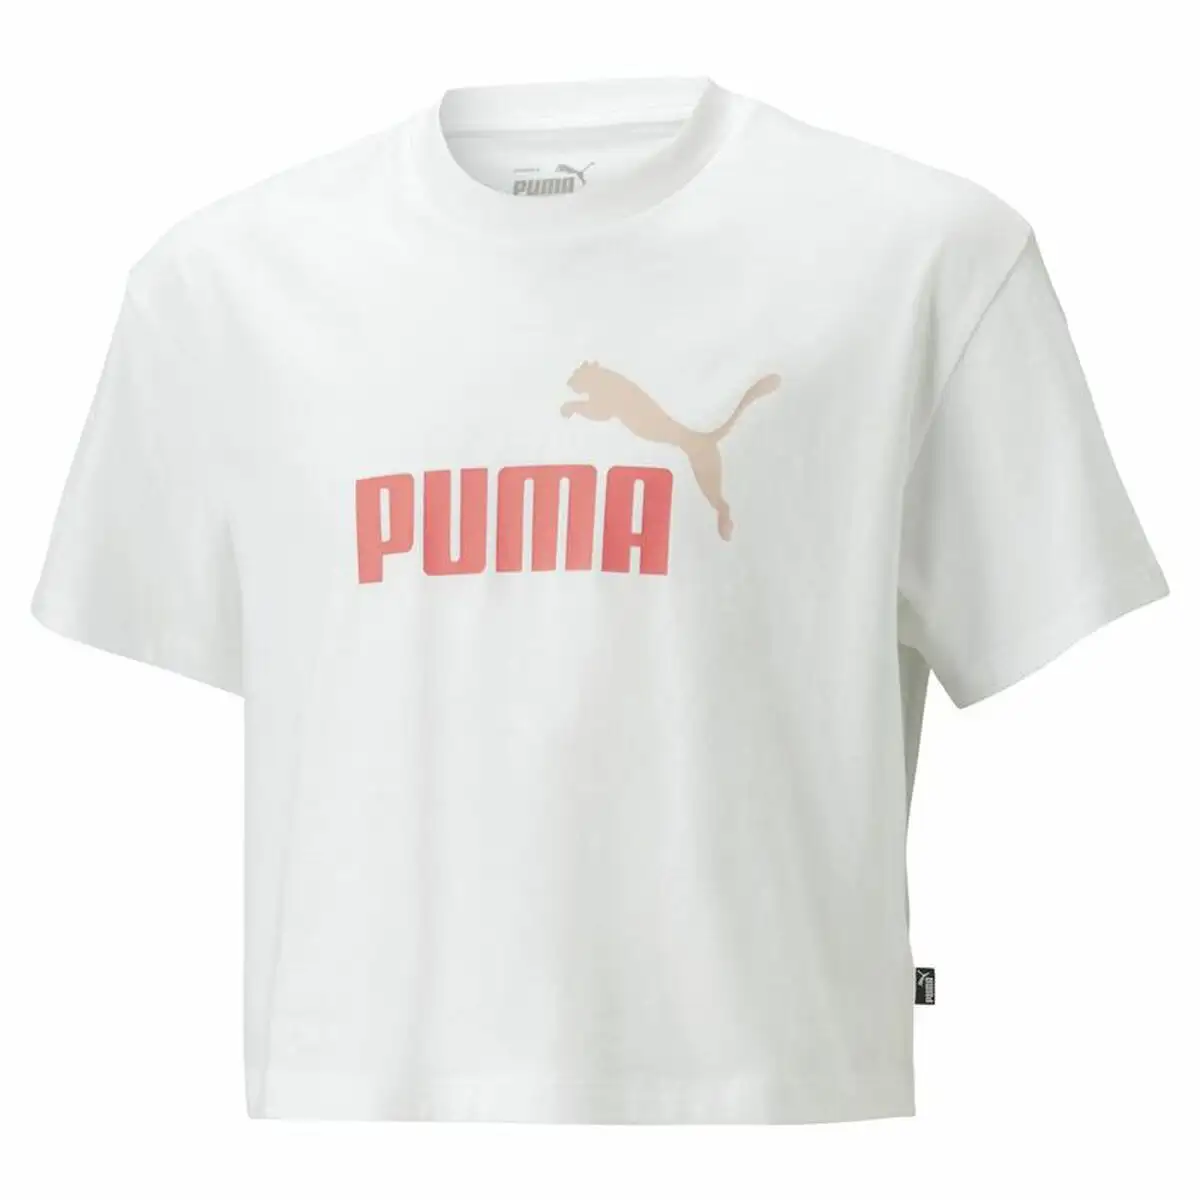 Shirt a manches courtes enfant puma logo cropped blanc_8574. Bienvenue chez DIAYTAR SENEGAL - Votre Porte d'Accès à la Diversité. Découvrez notre boutique en ligne et choisissez parmi une pléthore d'articles qui célèbrent la richesse culturelle du Sénégal et au-delà.